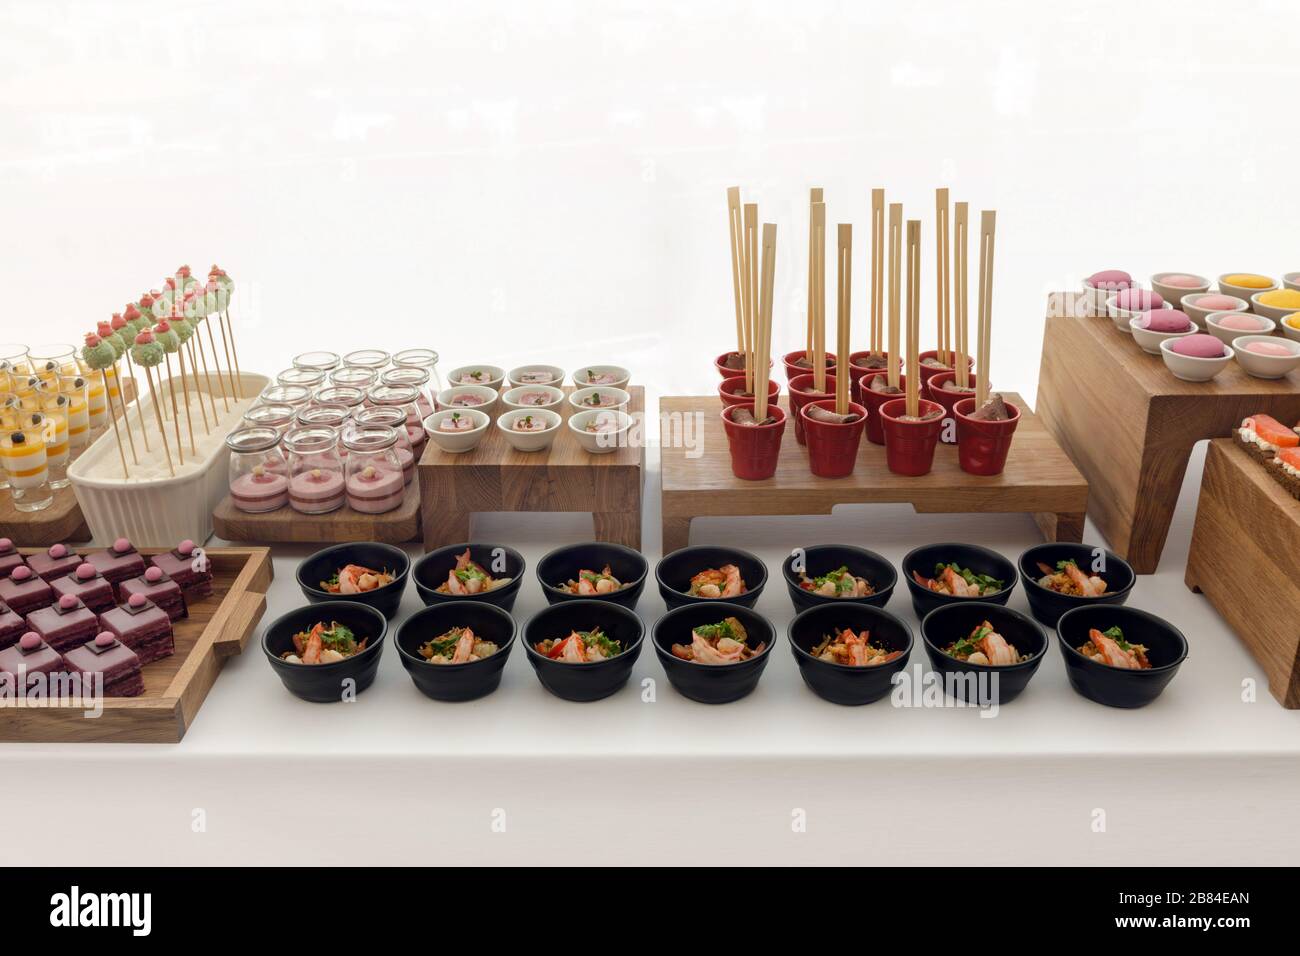 Élégant buffet de desserts coloré avec divers bonbons Banque D'Images